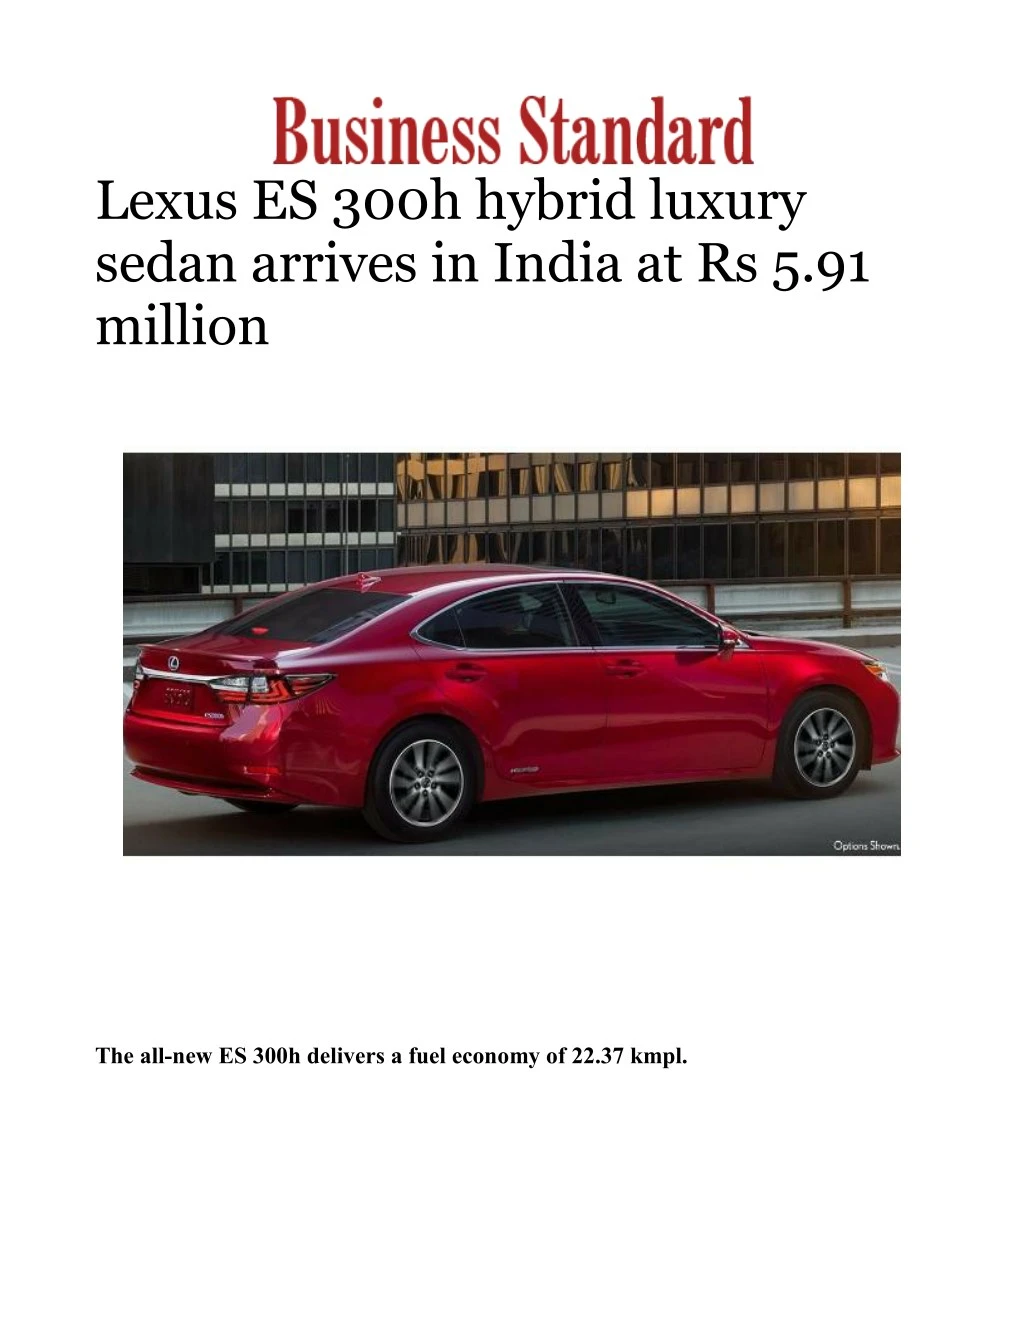 lexus es 300h hybrid luxury sedan arrives